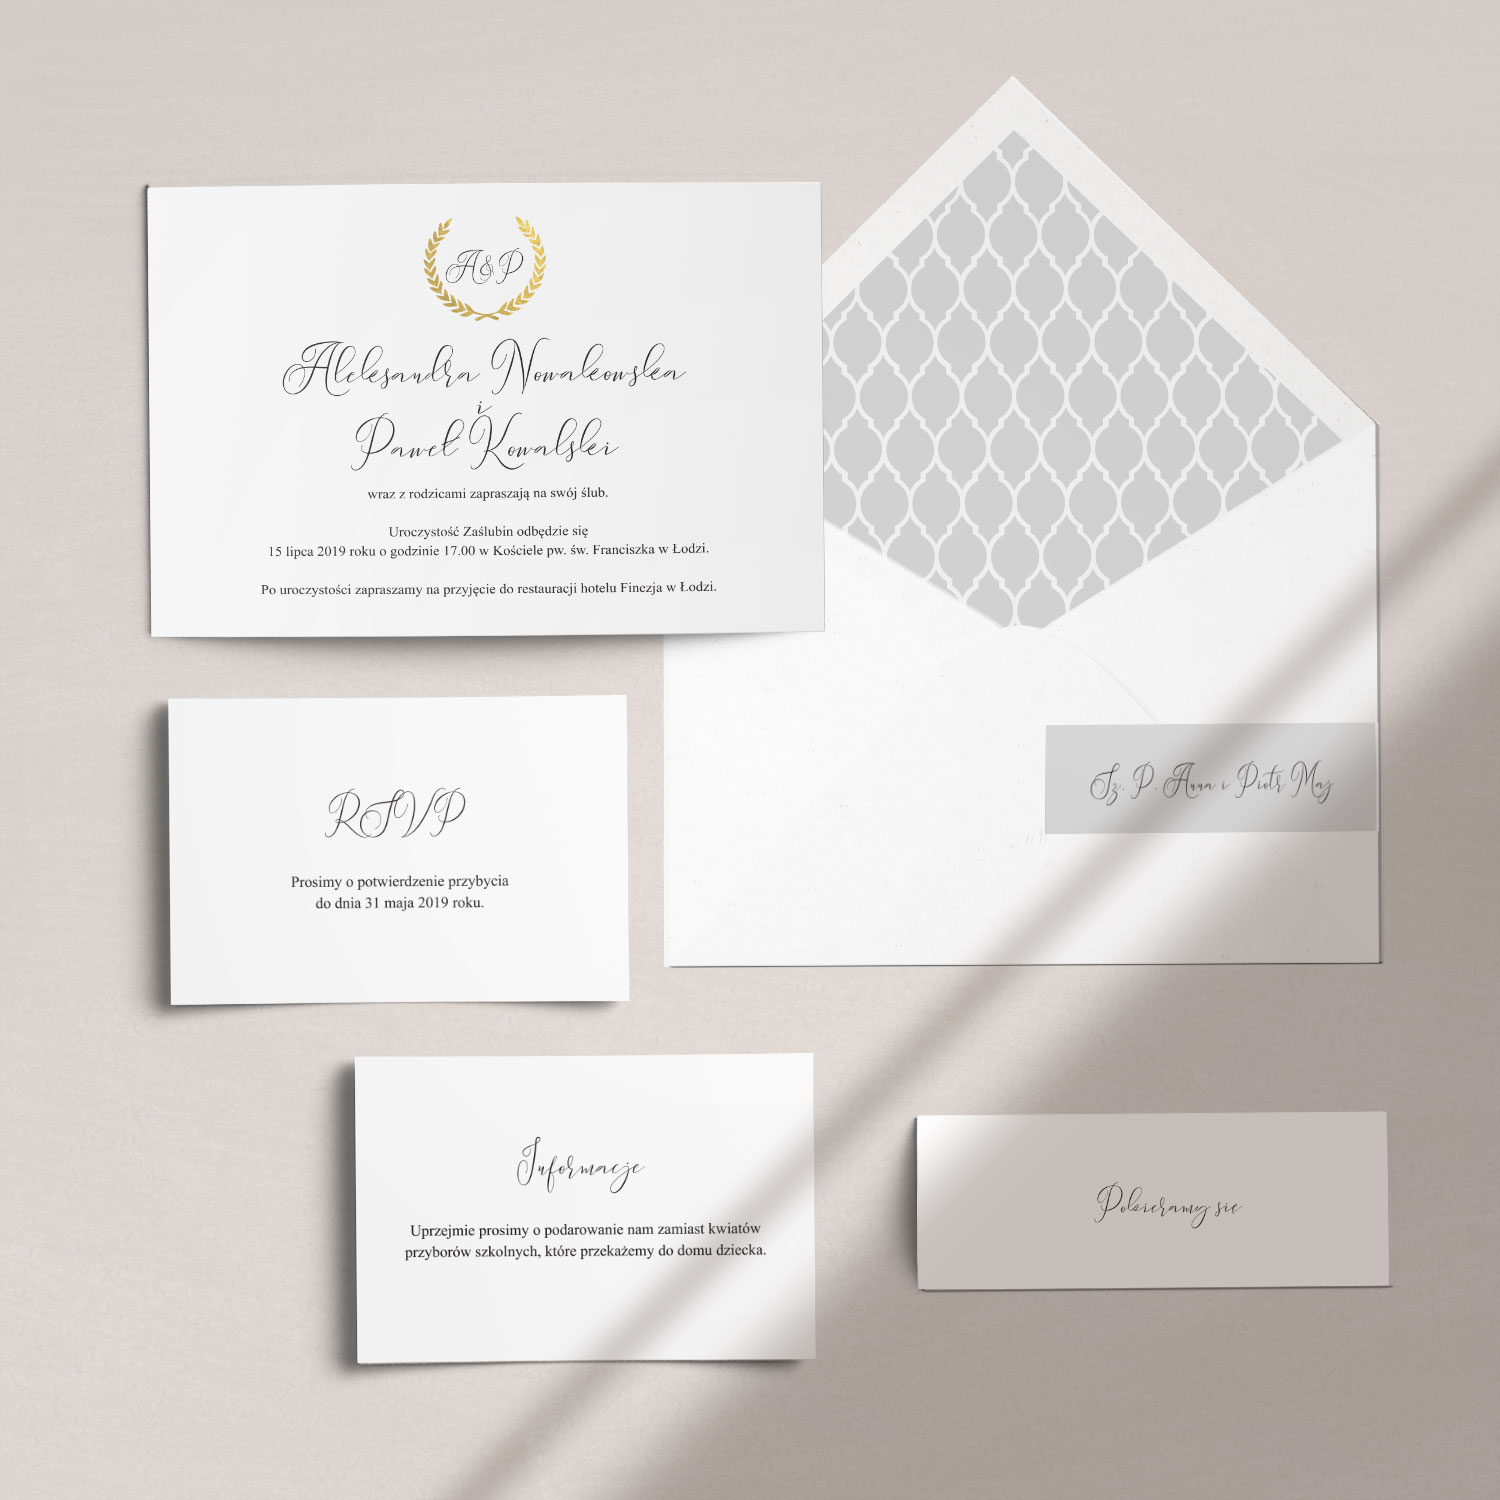 Eleganckie zaproszenia ślubne złocone wraz z kopertą, RCVP oraz opaską z kolekcji Złoty monogram firmy Cartolina - zaproszenia ślubne